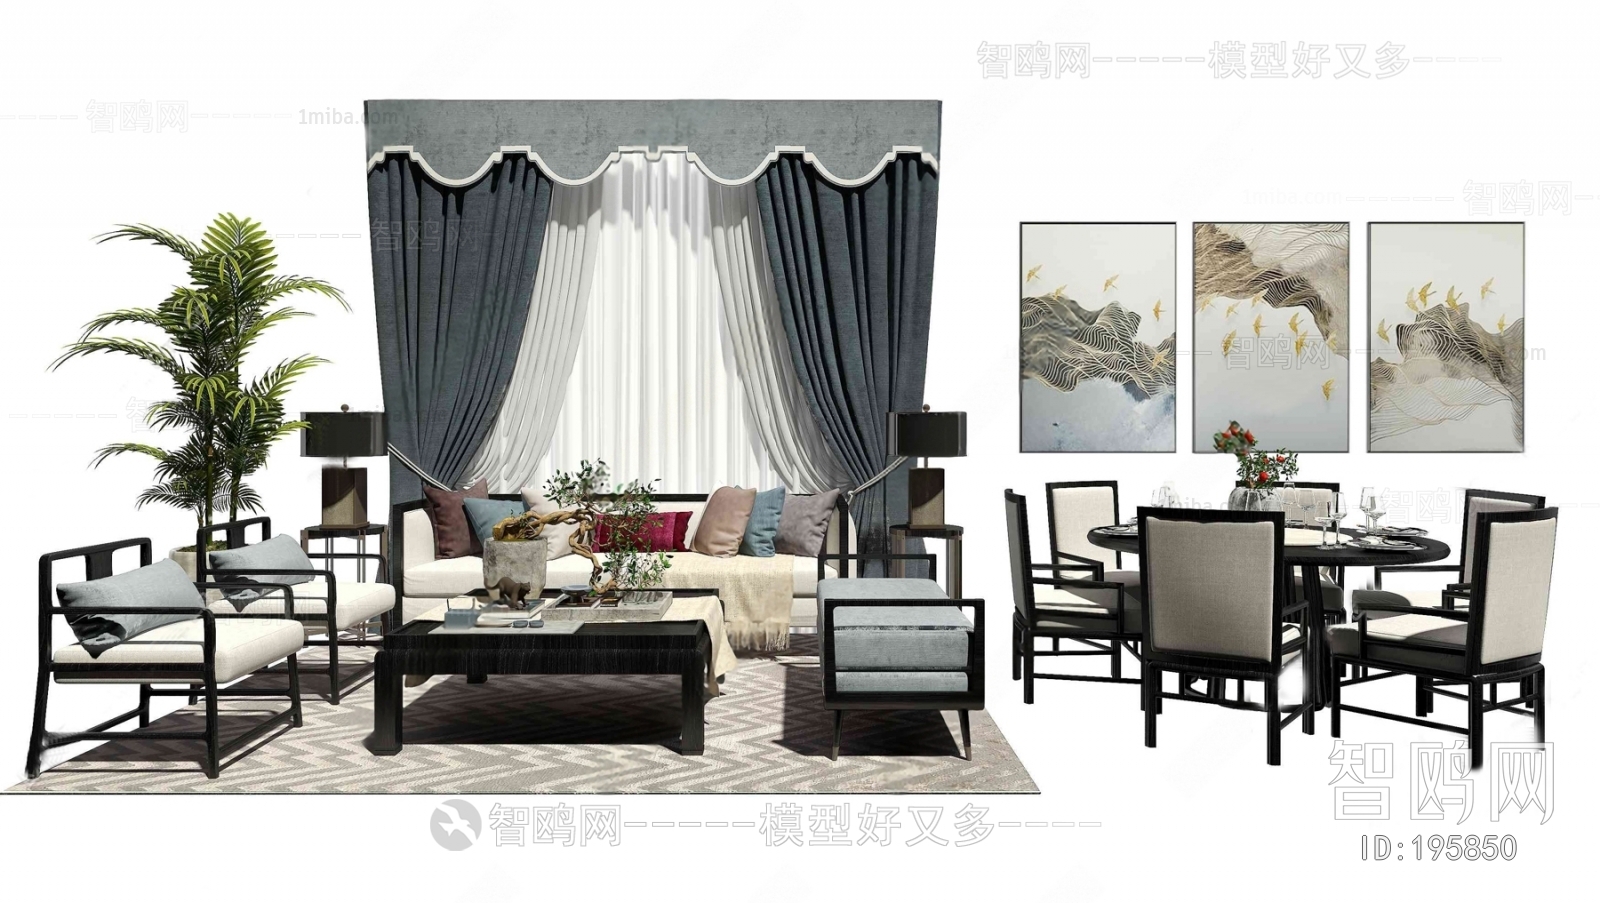 新中式沙发茶几餐桌椅挂画窗帘植物组合